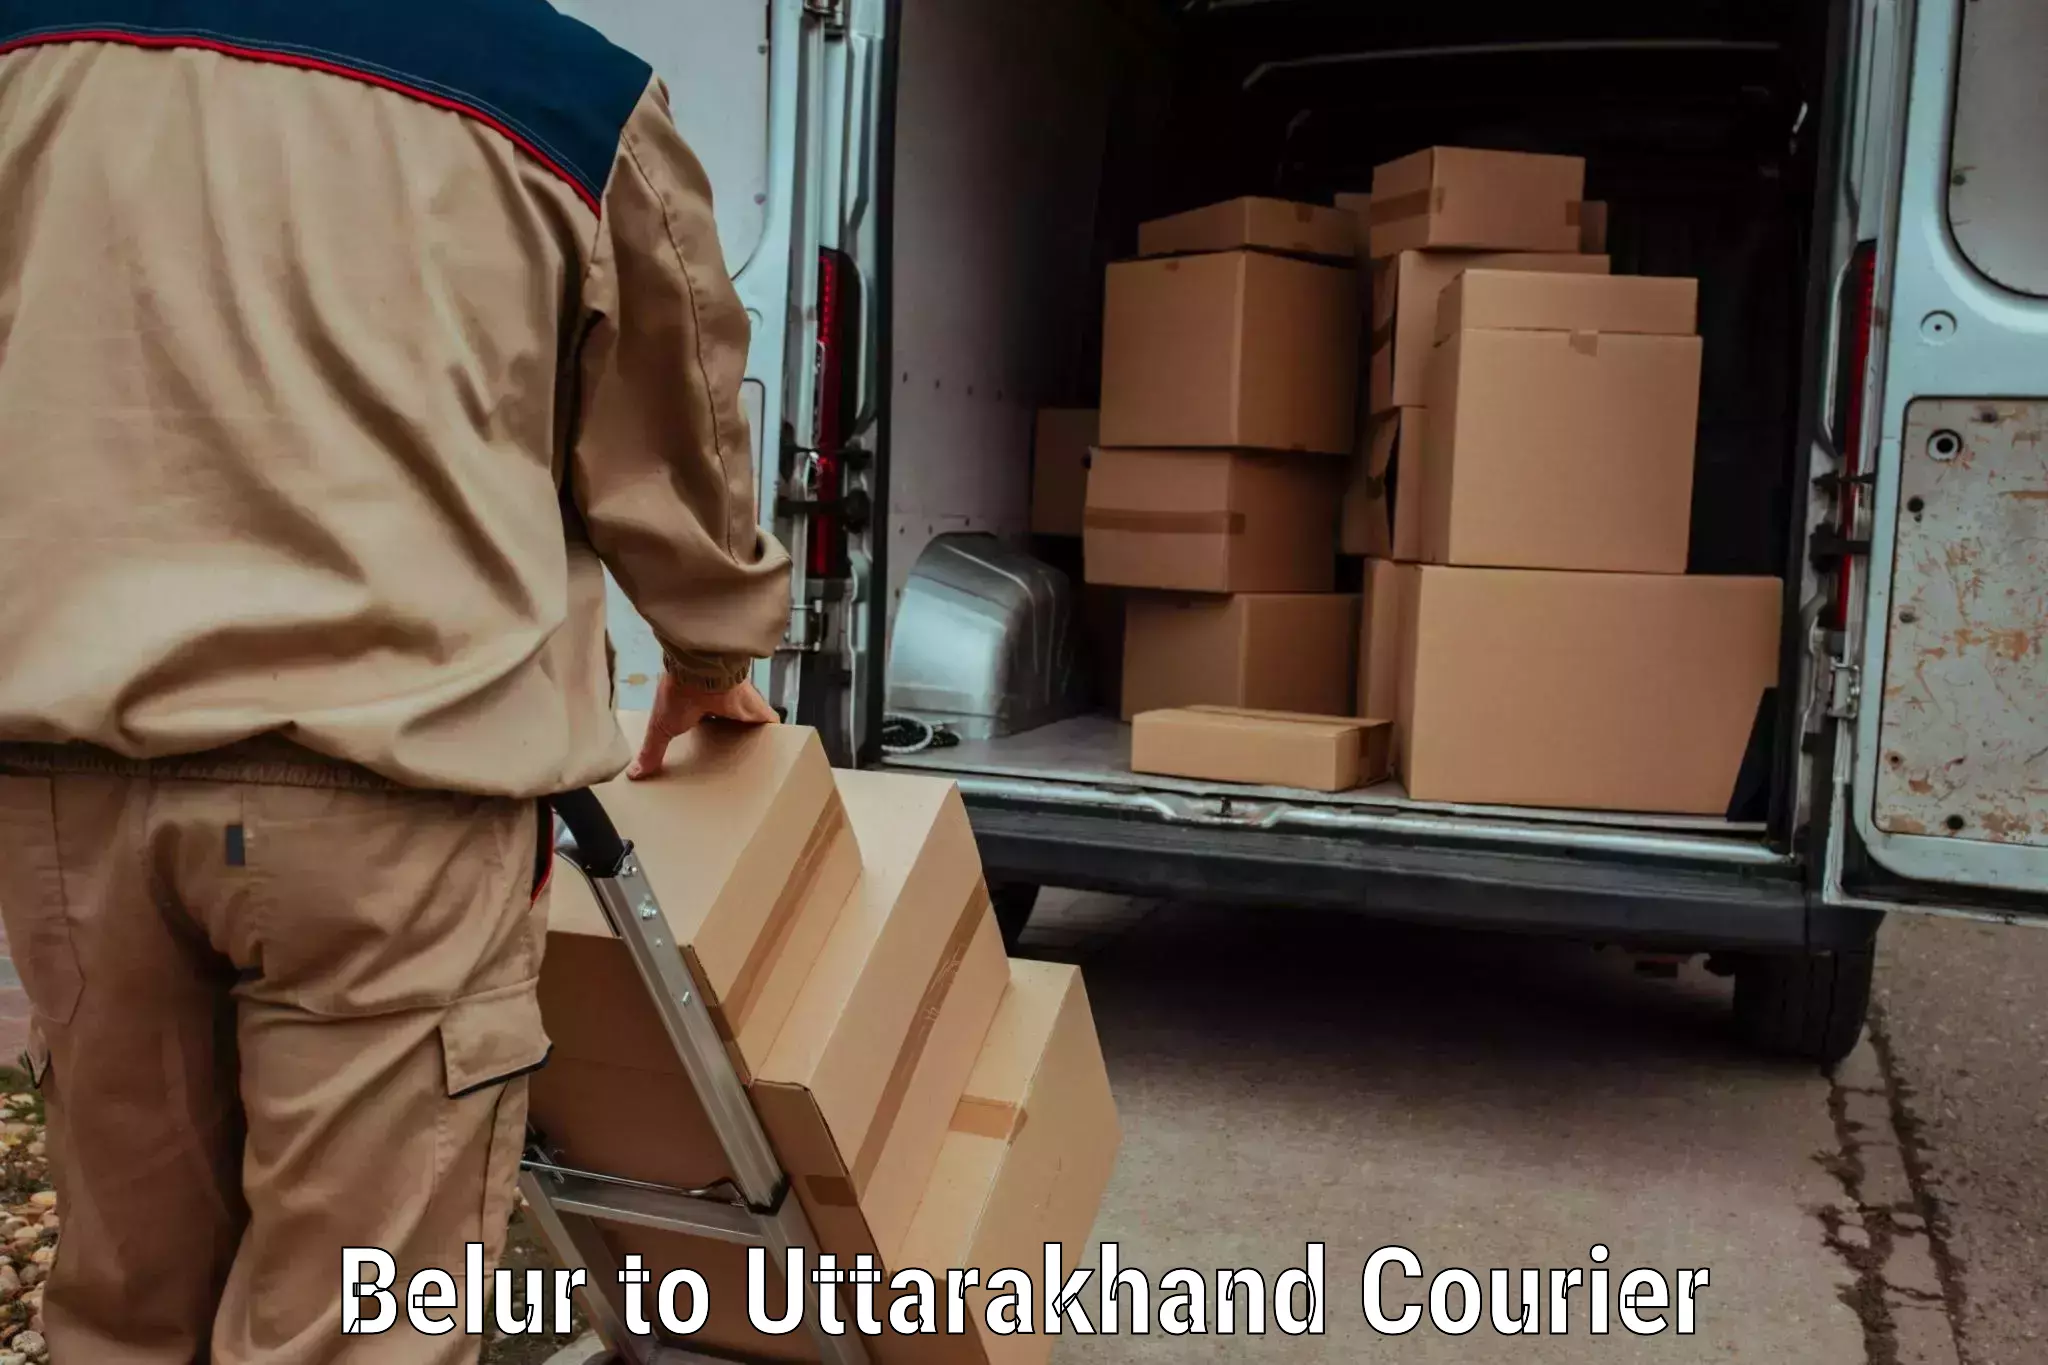 Efficient parcel service Belur to Nainital